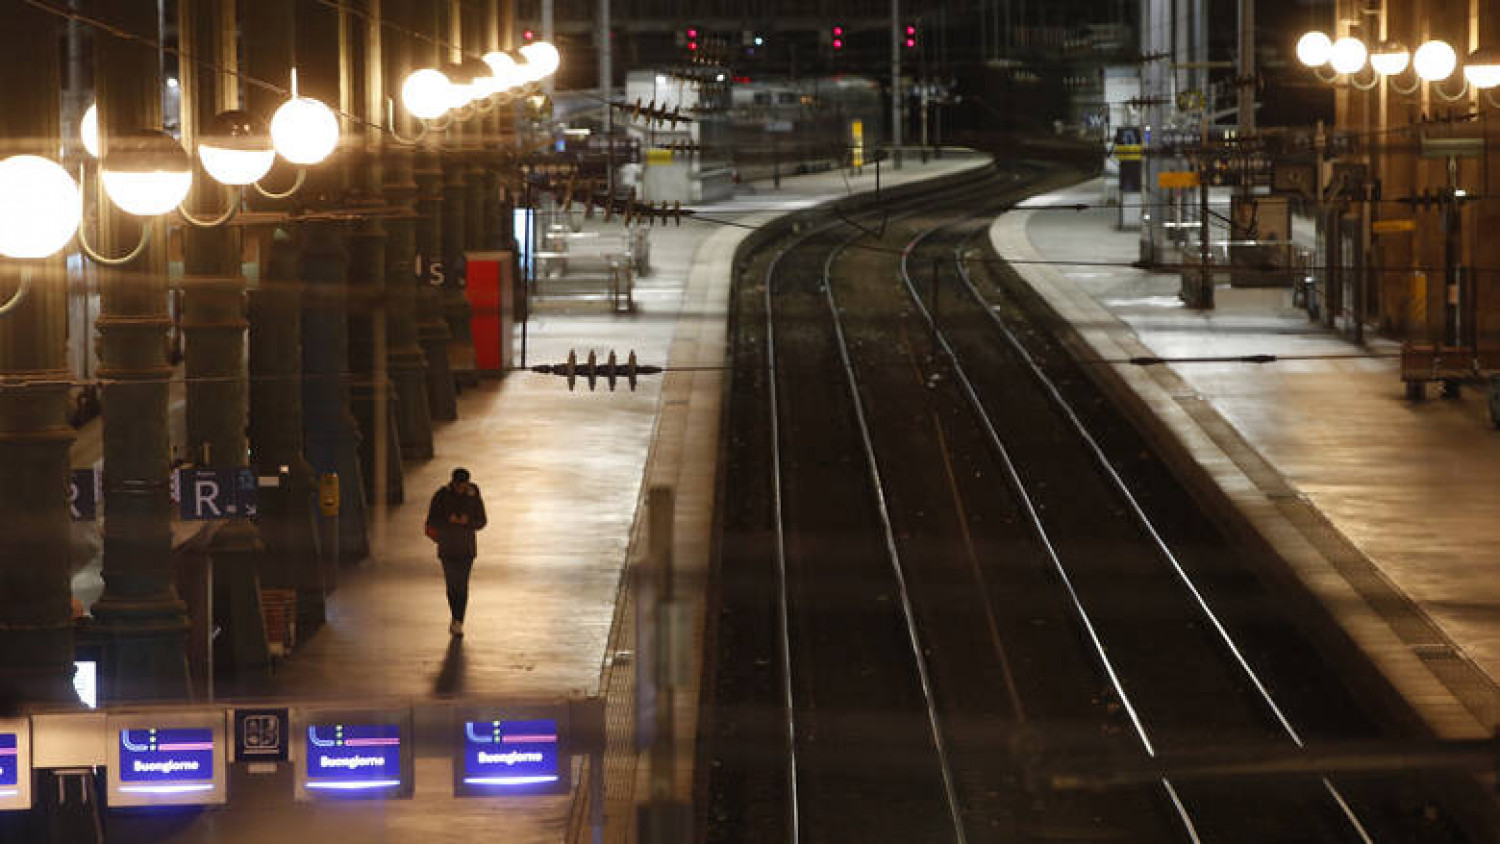 Παρίσι: Εκκενώθηκε σταθμός λόγω ύποπτης τσάντας (pics)